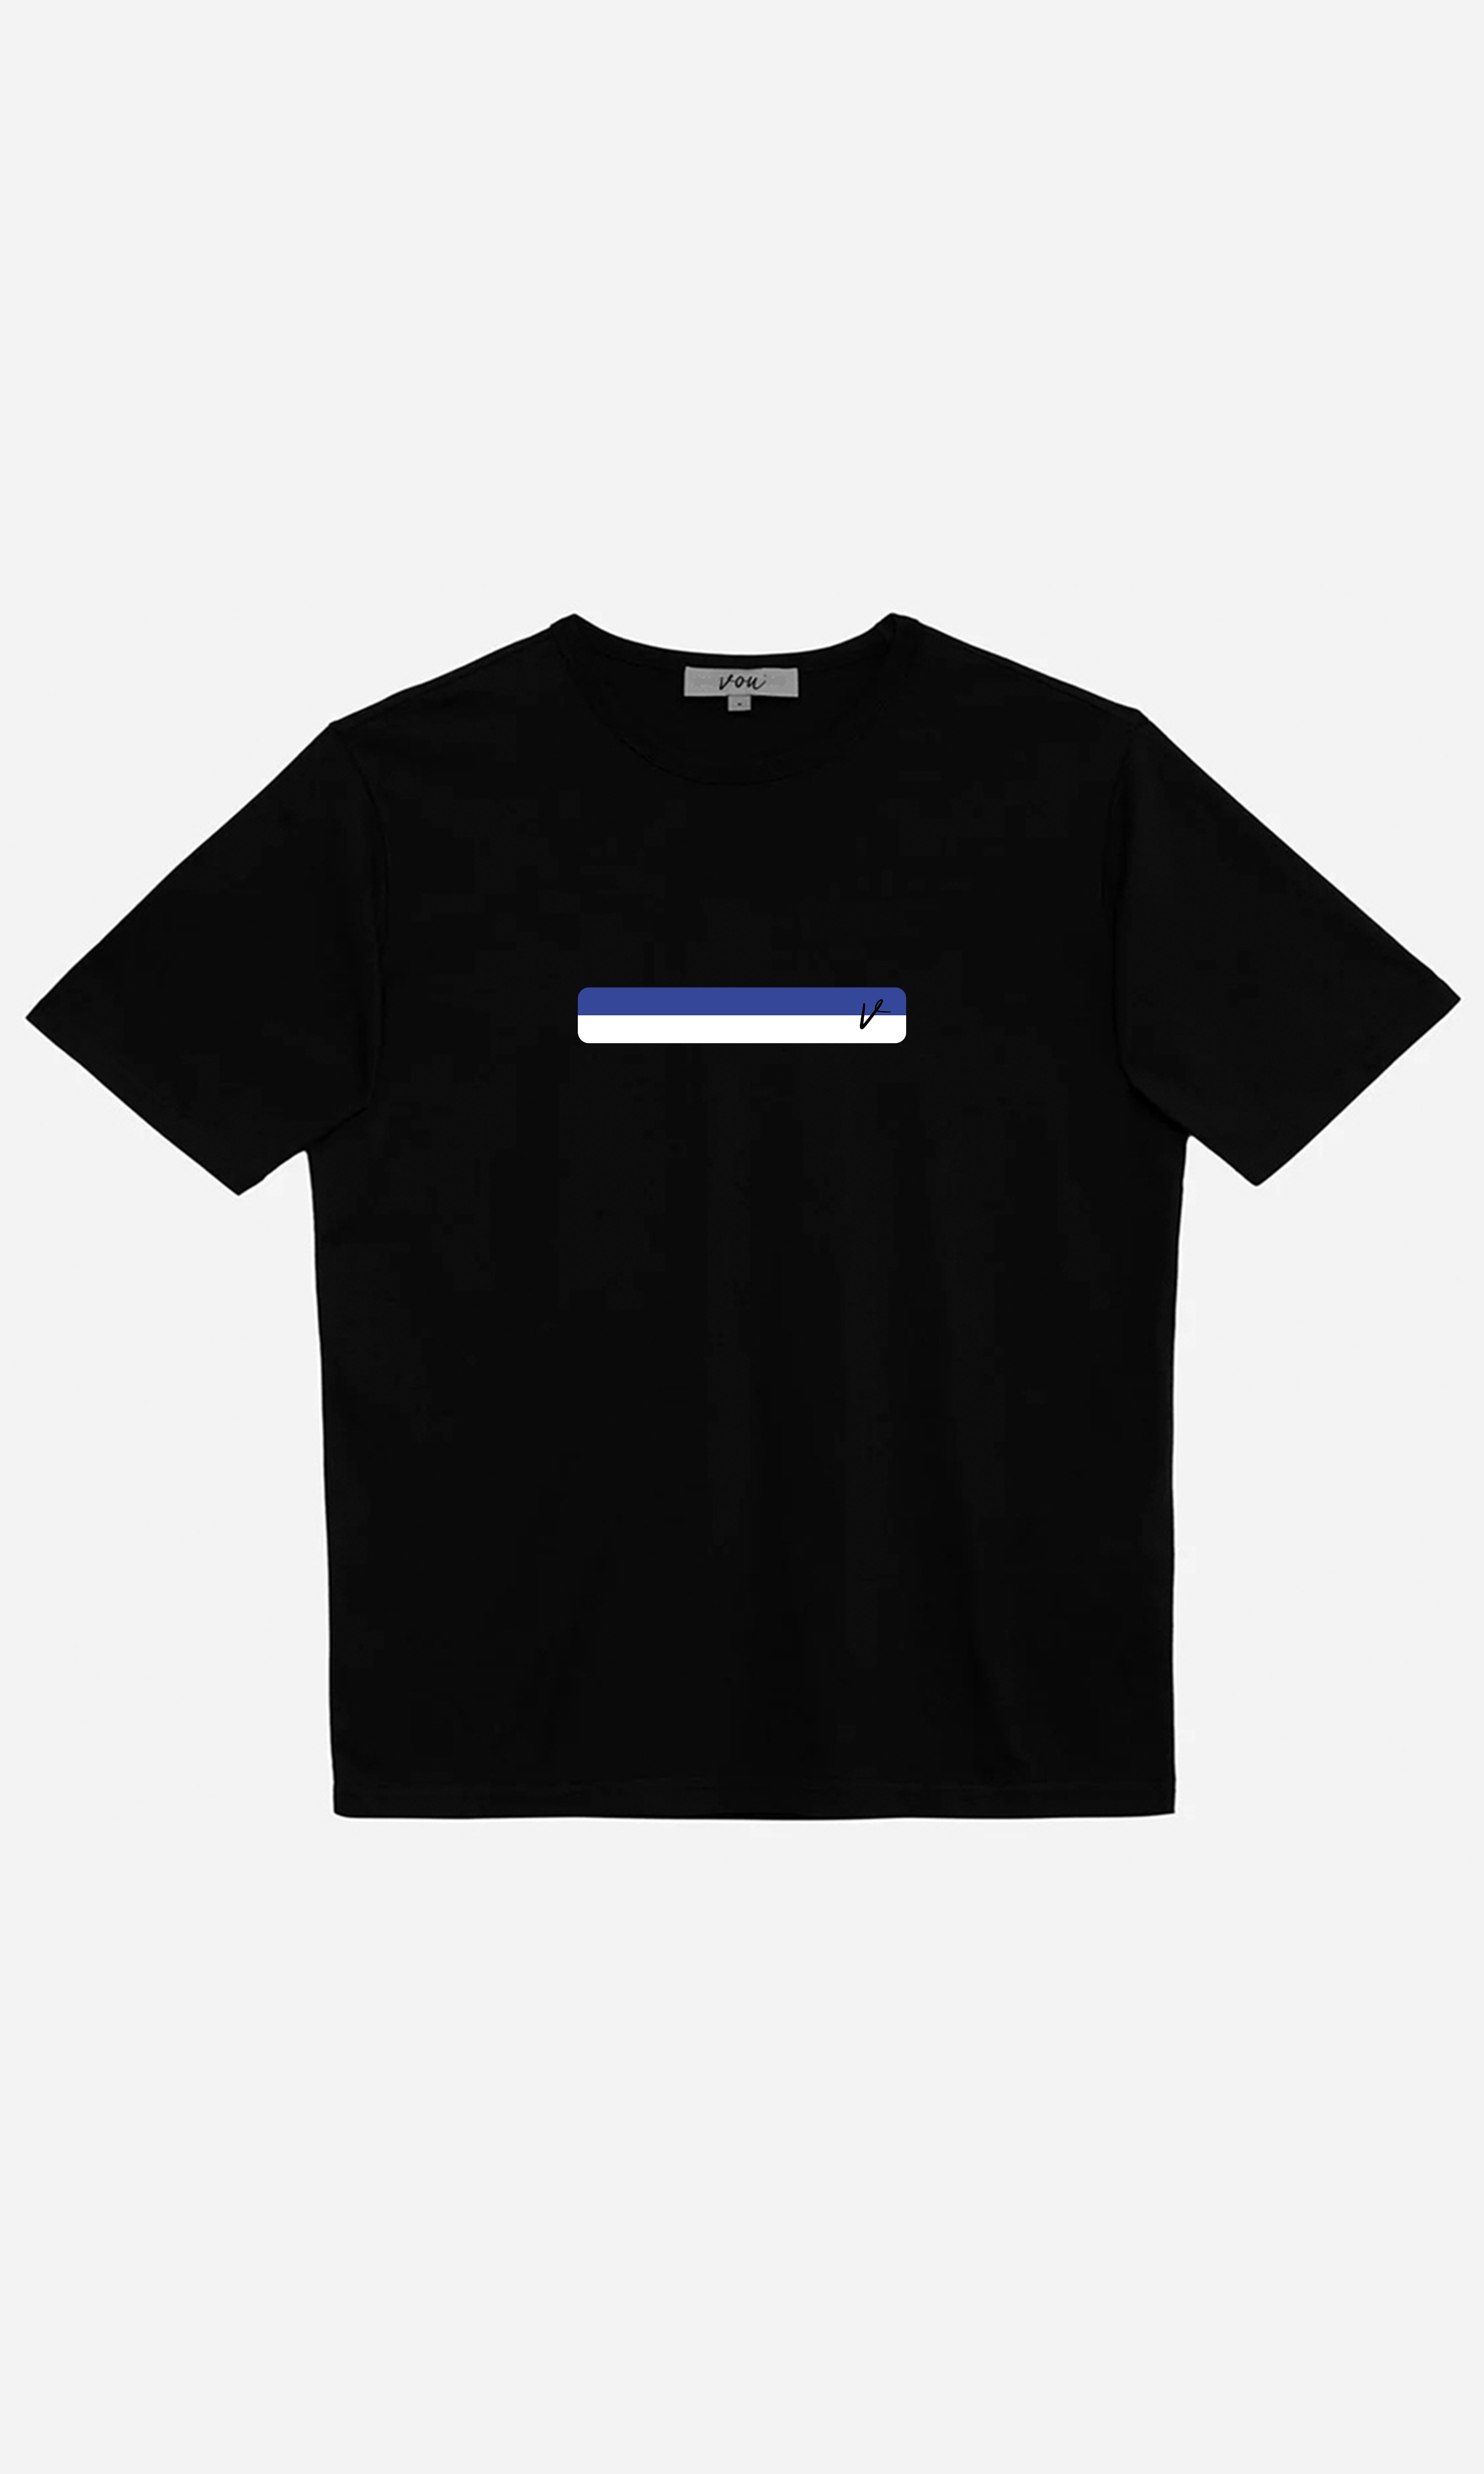 Design Studio Oversize Baskılı Unisex T-Shirt - Siyah